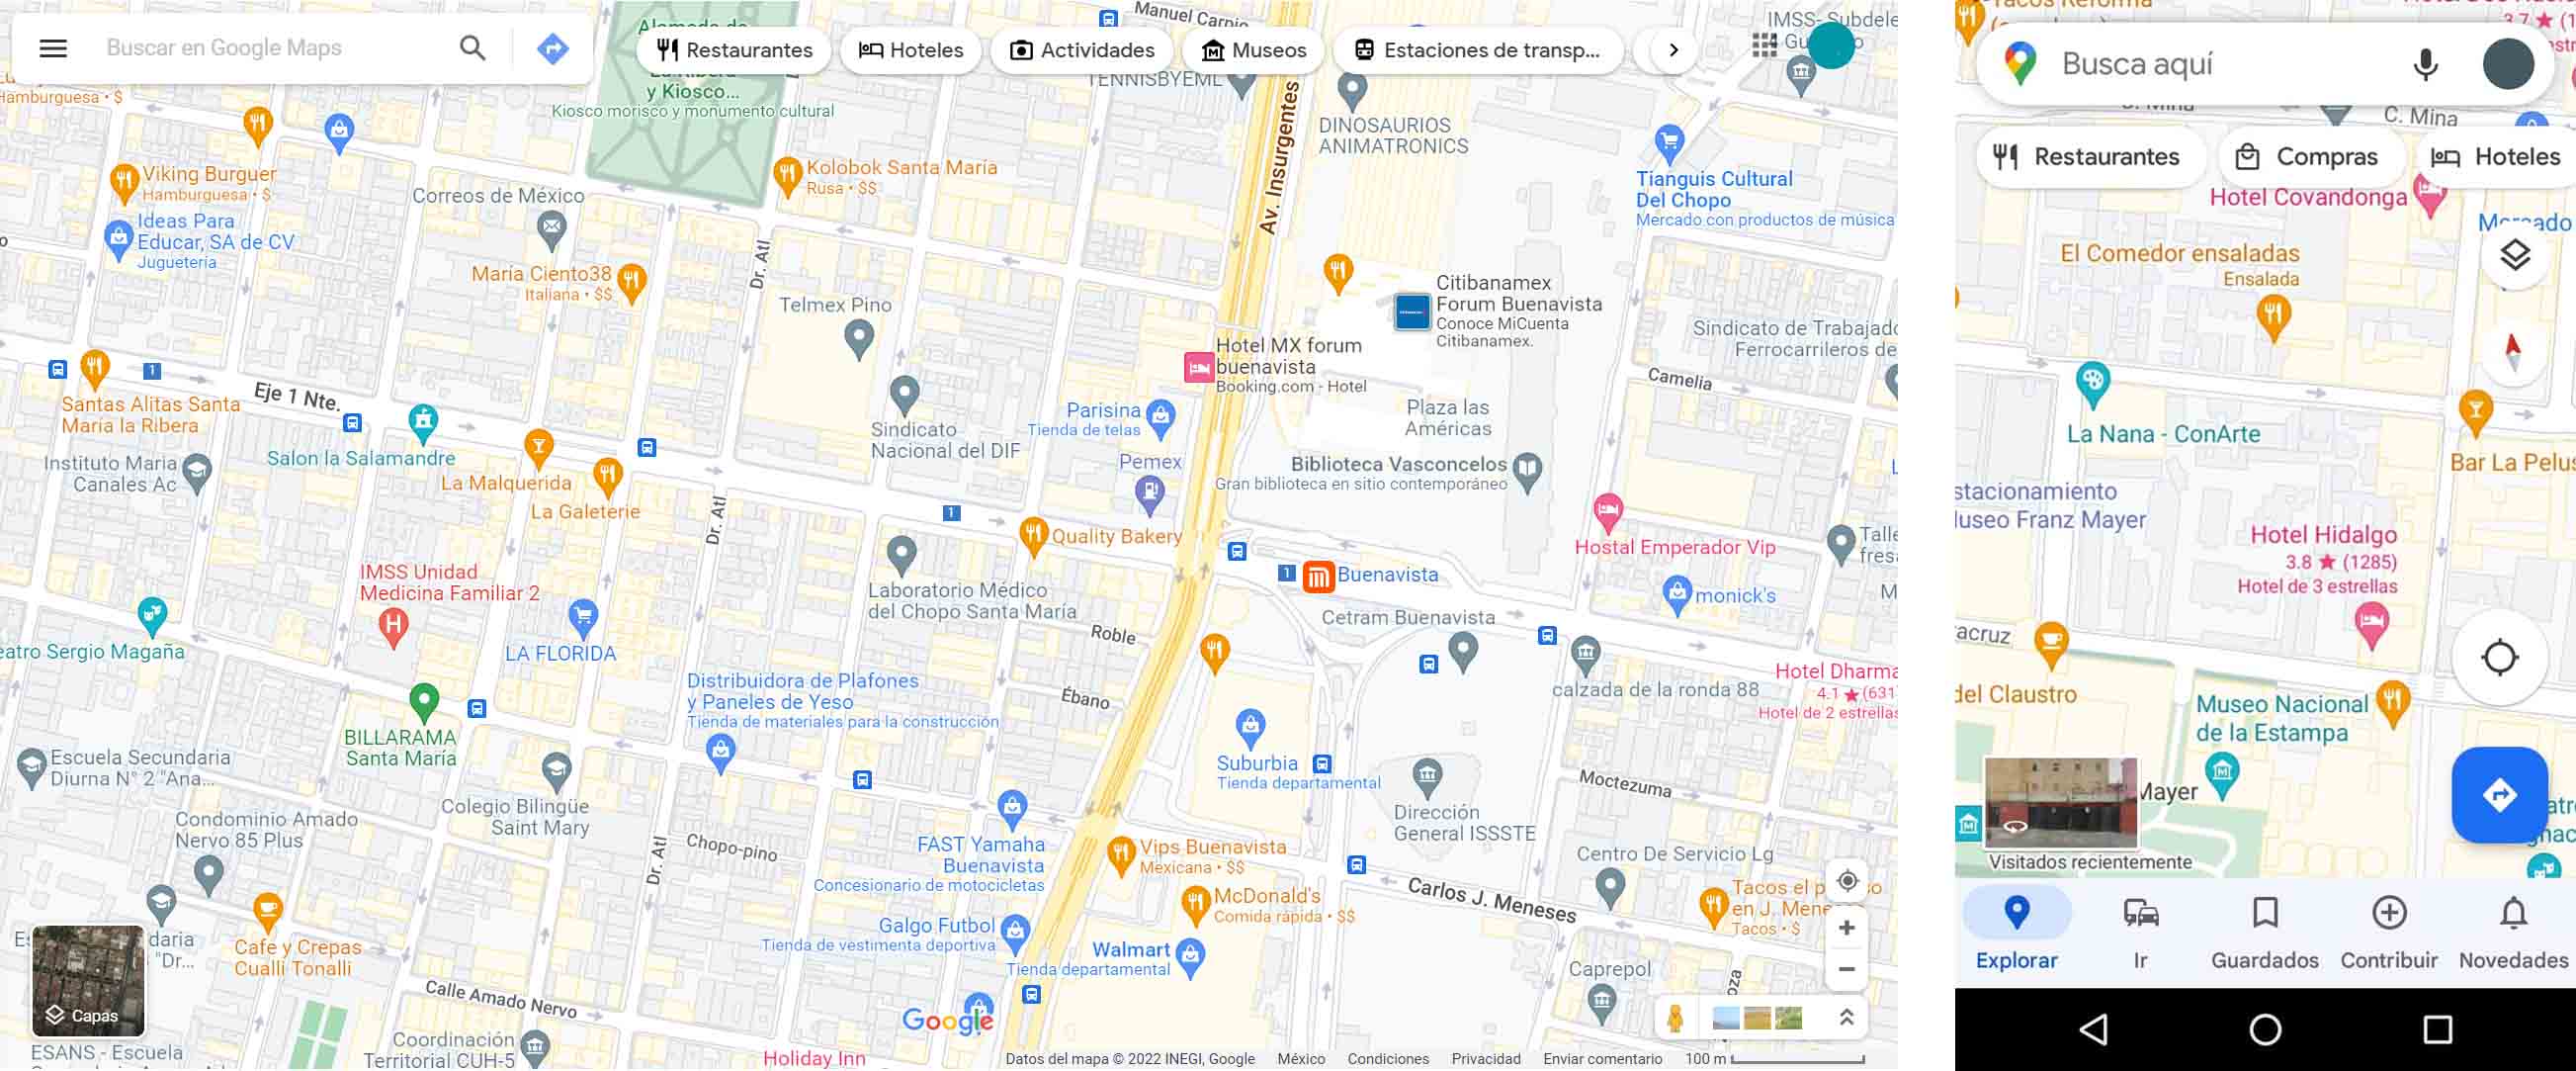 ejemplos de personalización de sitios web: Google Maps